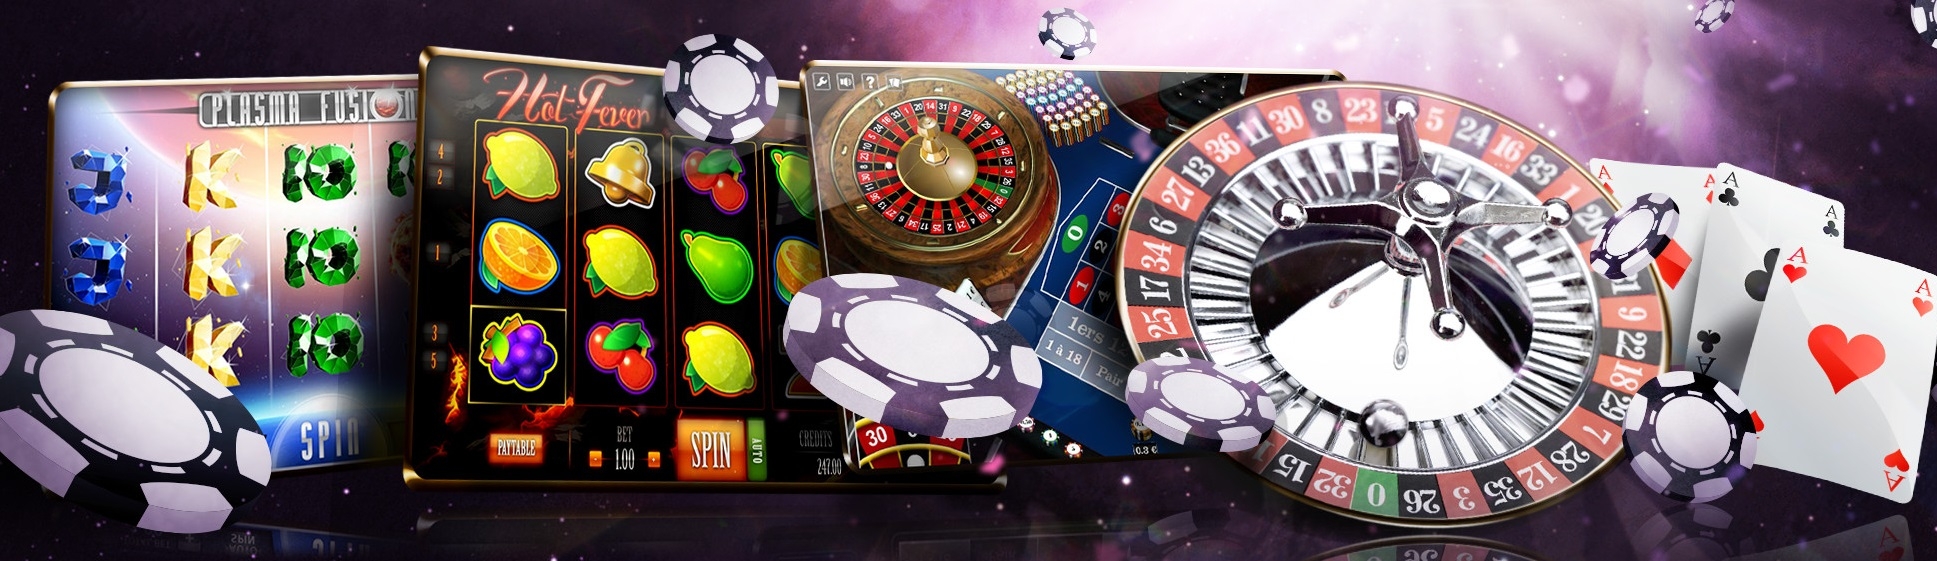 Онлайн казино: что нужно знать, как играть и выигрывать?